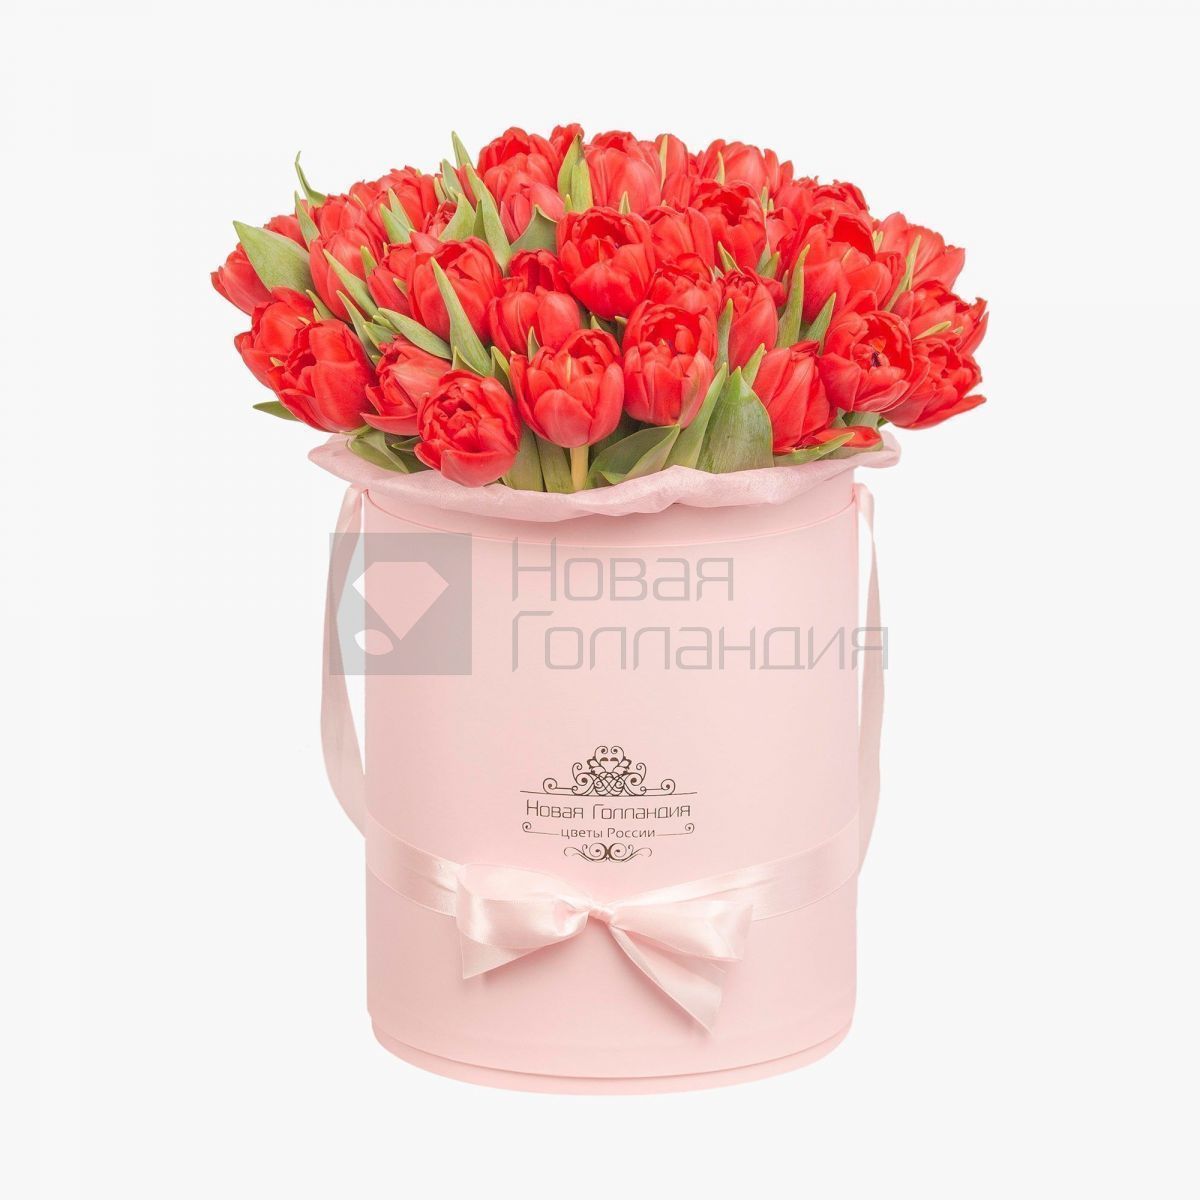 59 красных тюльпанов в большой розовой шляпной коробке №508